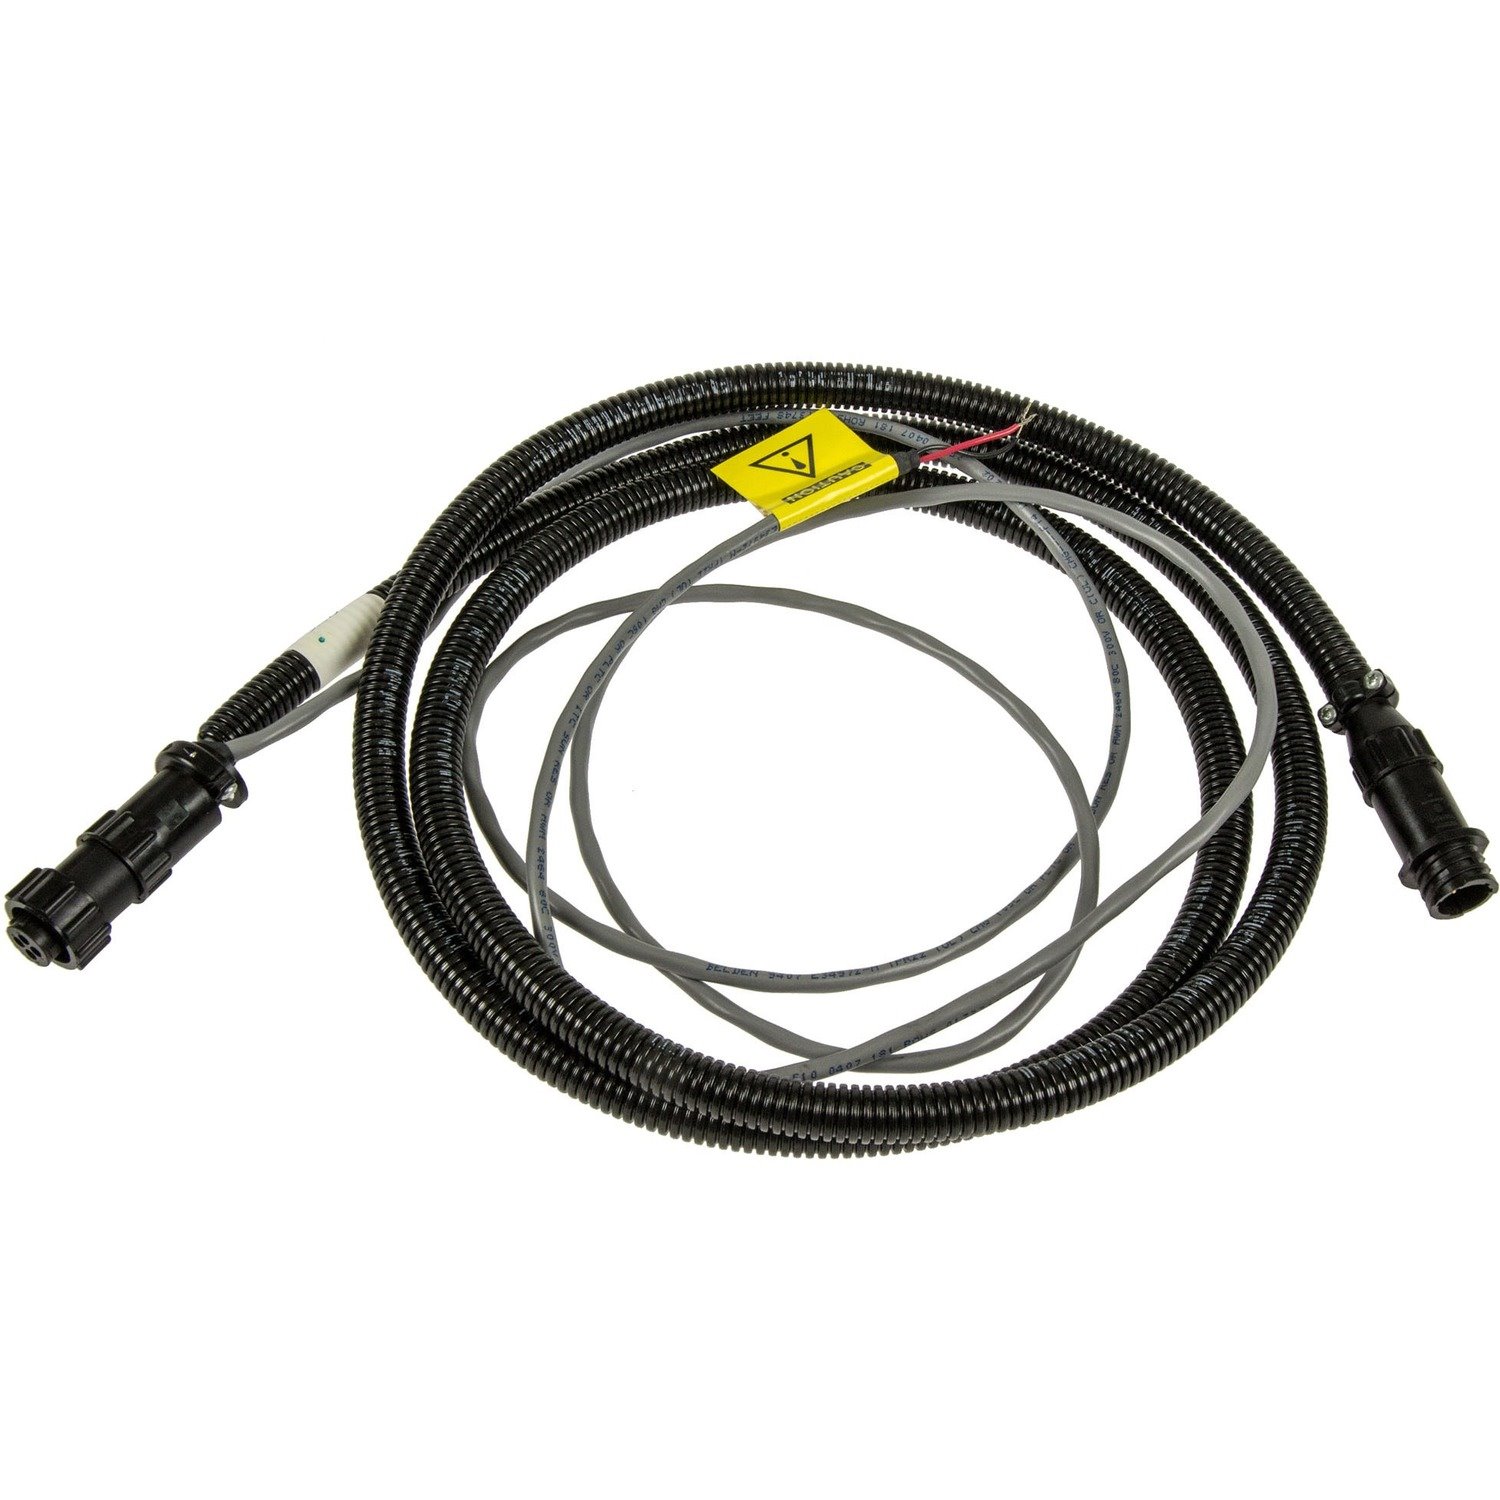 Zebra Power Extension Cable for Pre-Regulator - CA1230